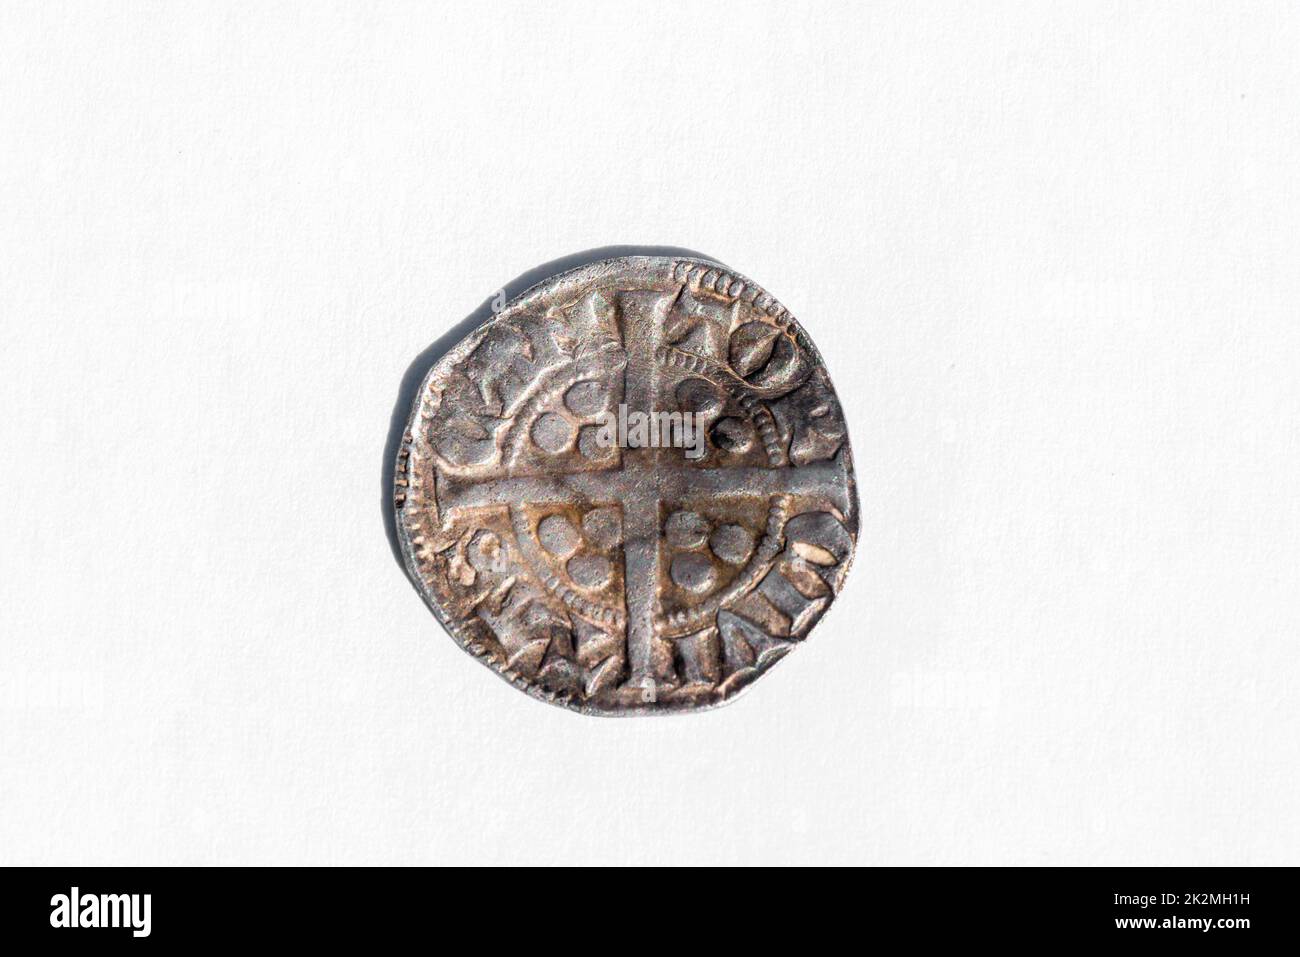 Argent long croix Penny English pièce de monnaie martelée du roi Henry II du 14th siècle datant d'environ 1310- 1314 minted dans Canterbury Angleterre, inverse de la coupe o Banque D'Images